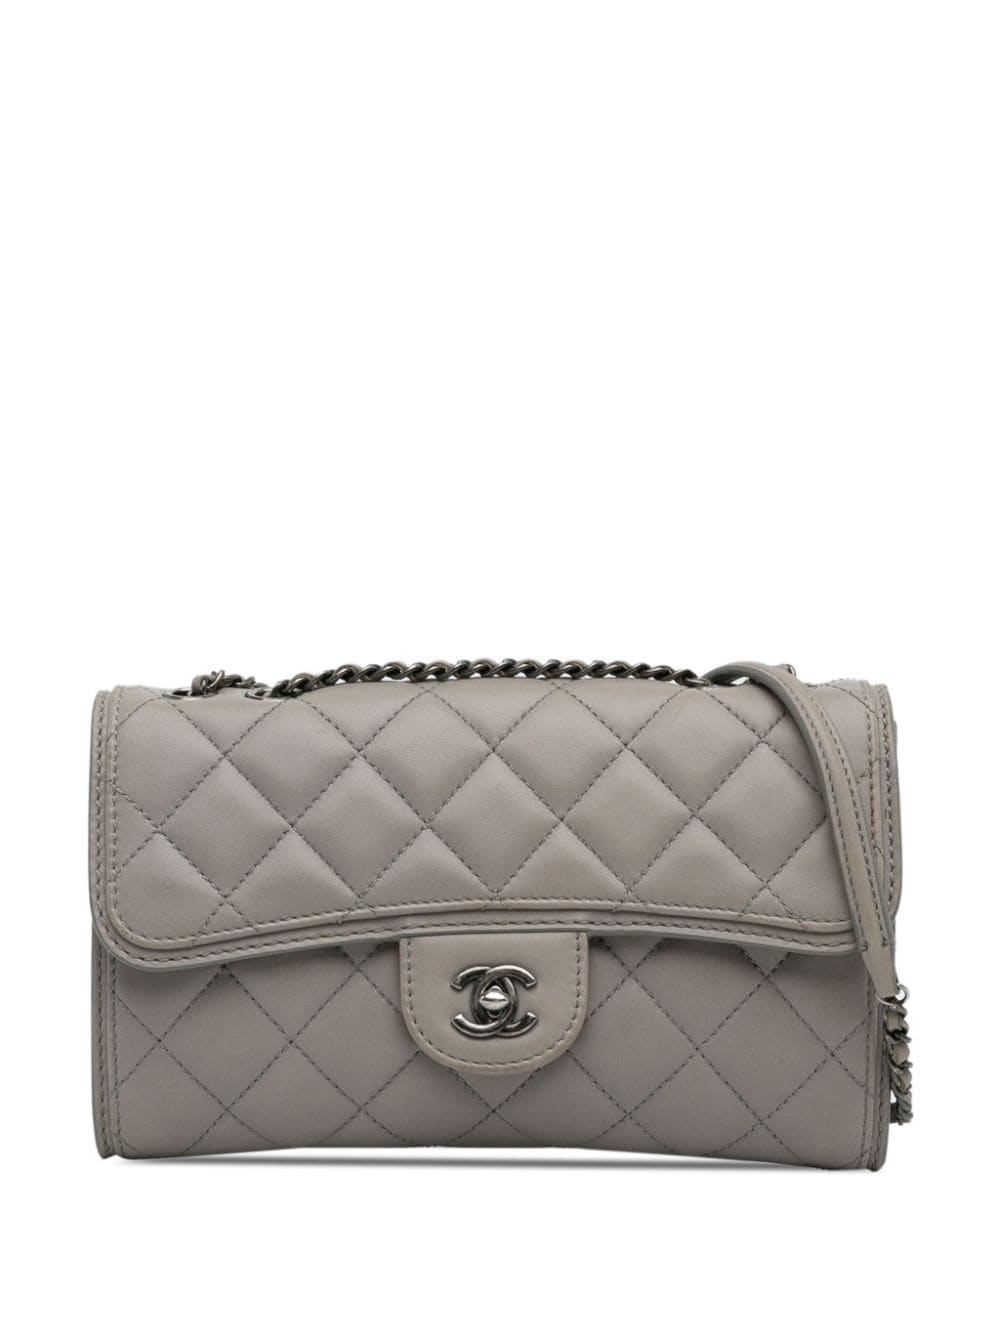 Pre-owned Chanel 2013-2014 Mini Lambskin Flap Crossbody Bag In Grey